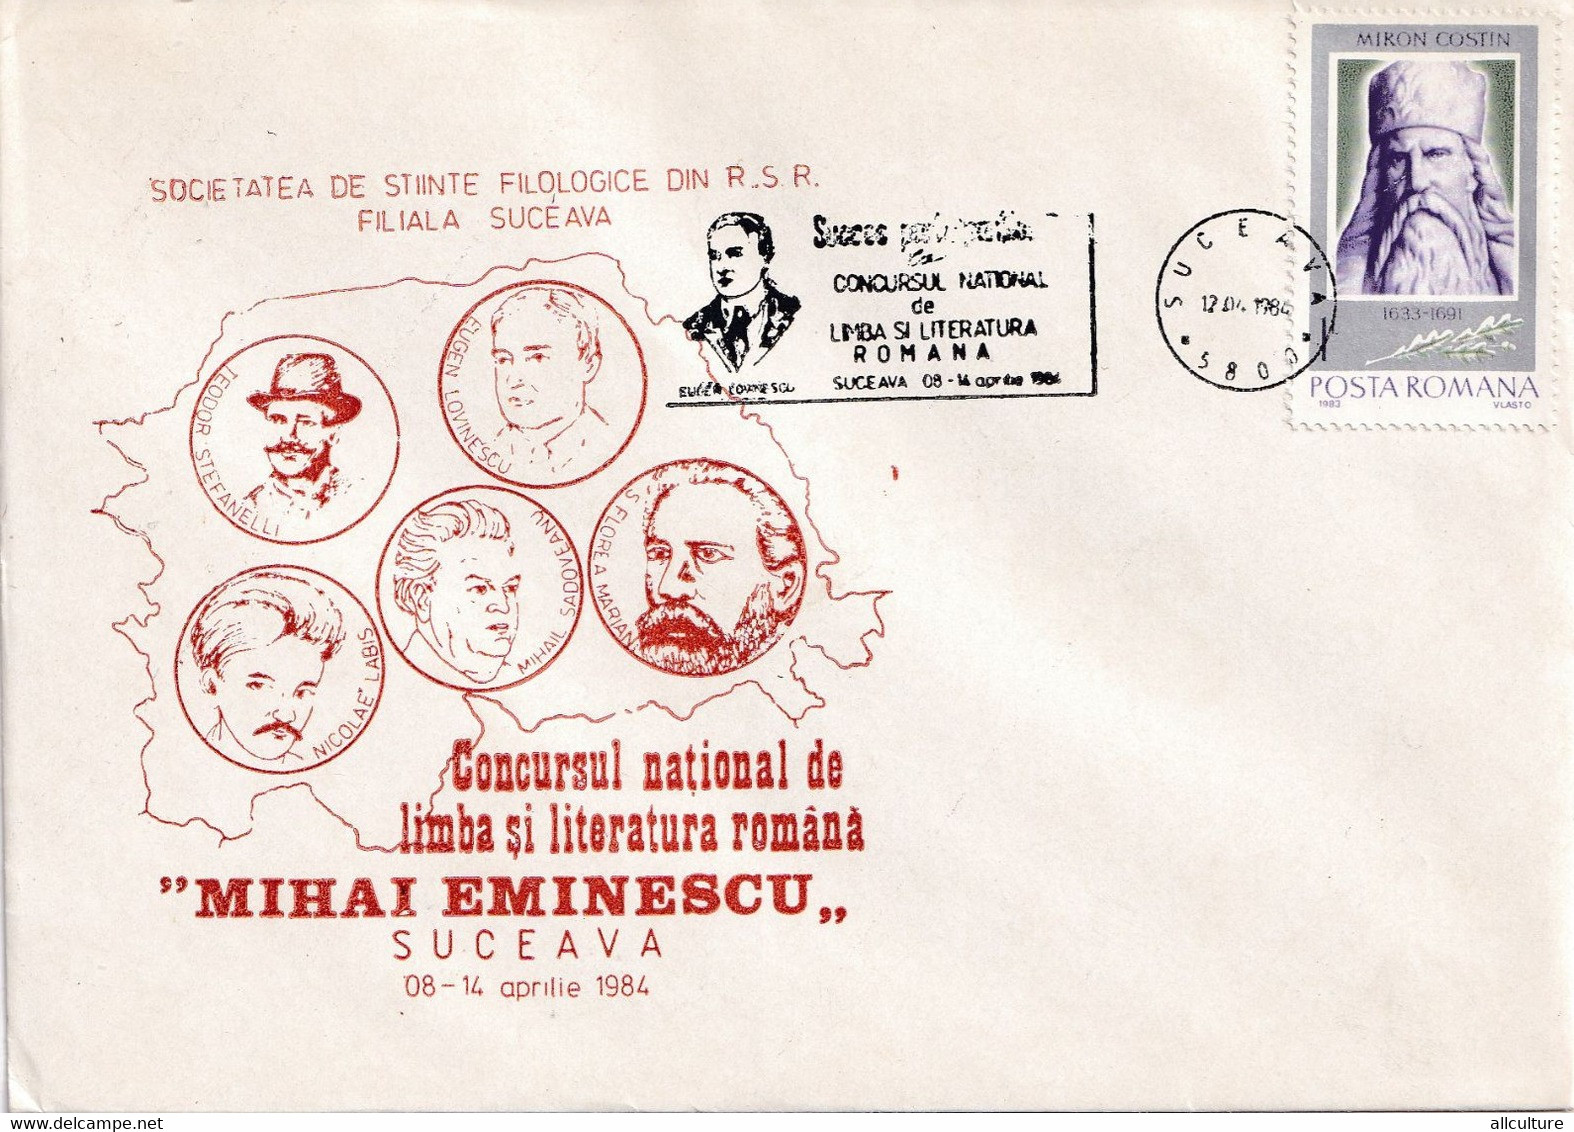 A2824 - Societatea De Stiinte Filologice, Concursul National De Literatura Romana Mihai Eminescu, Suceava 1984  Romania - Lettres & Documents